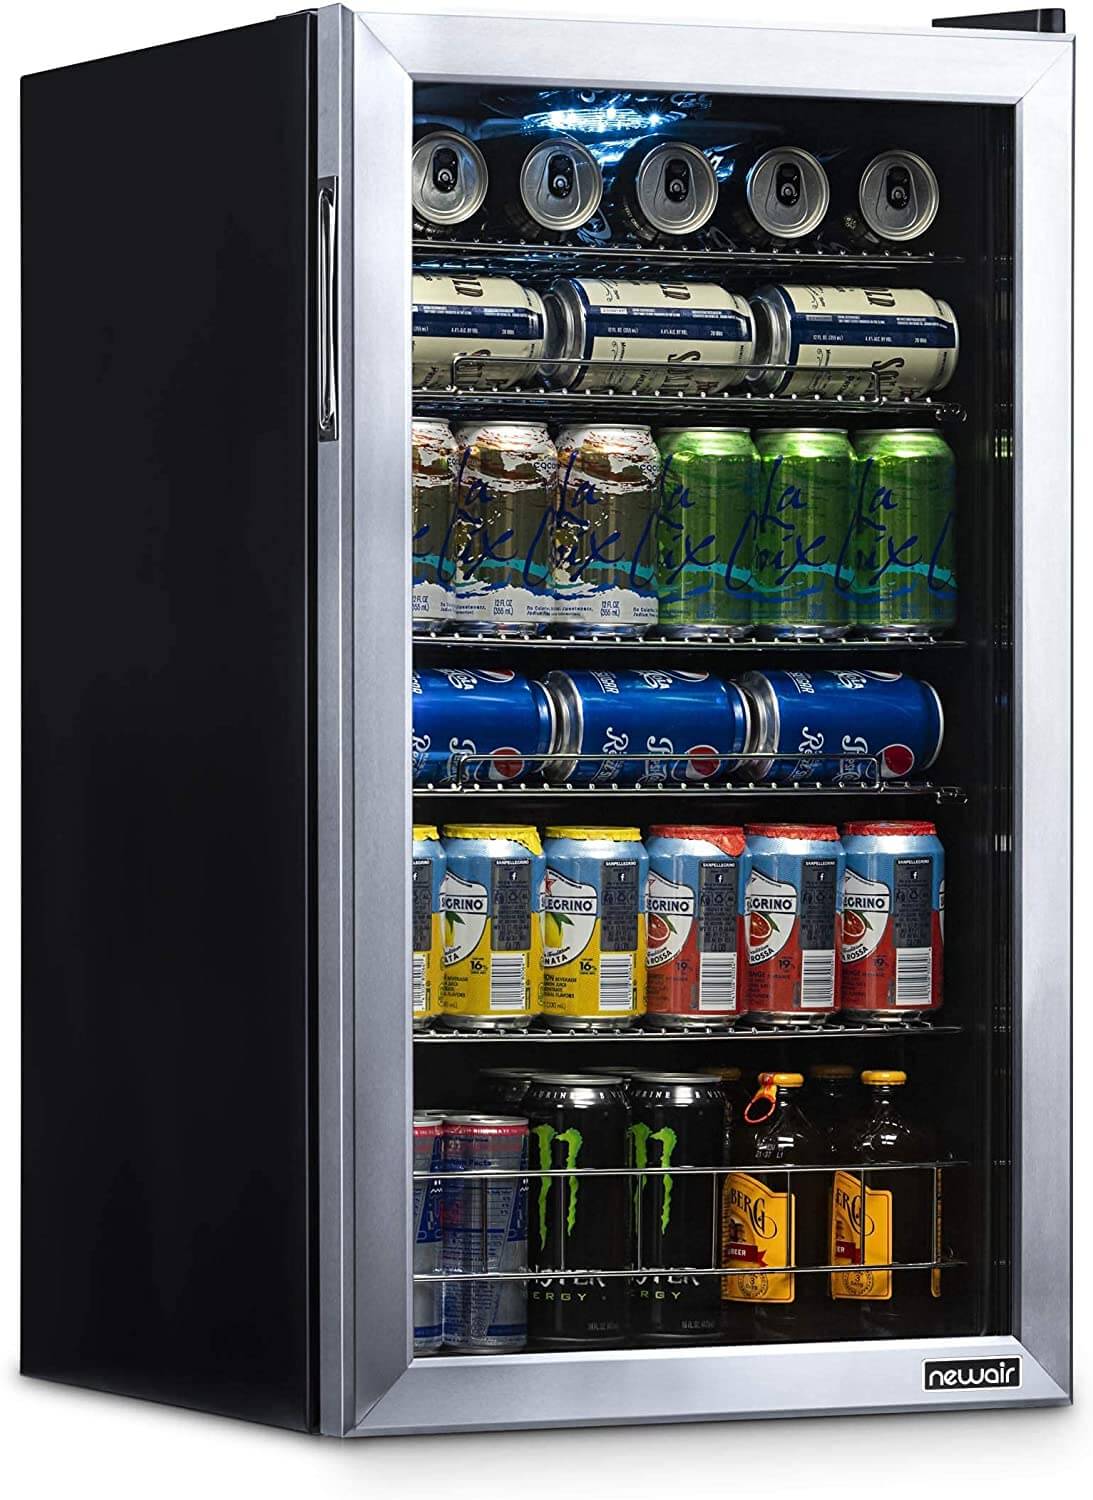 NewAir Beverage Beer Refrigerator